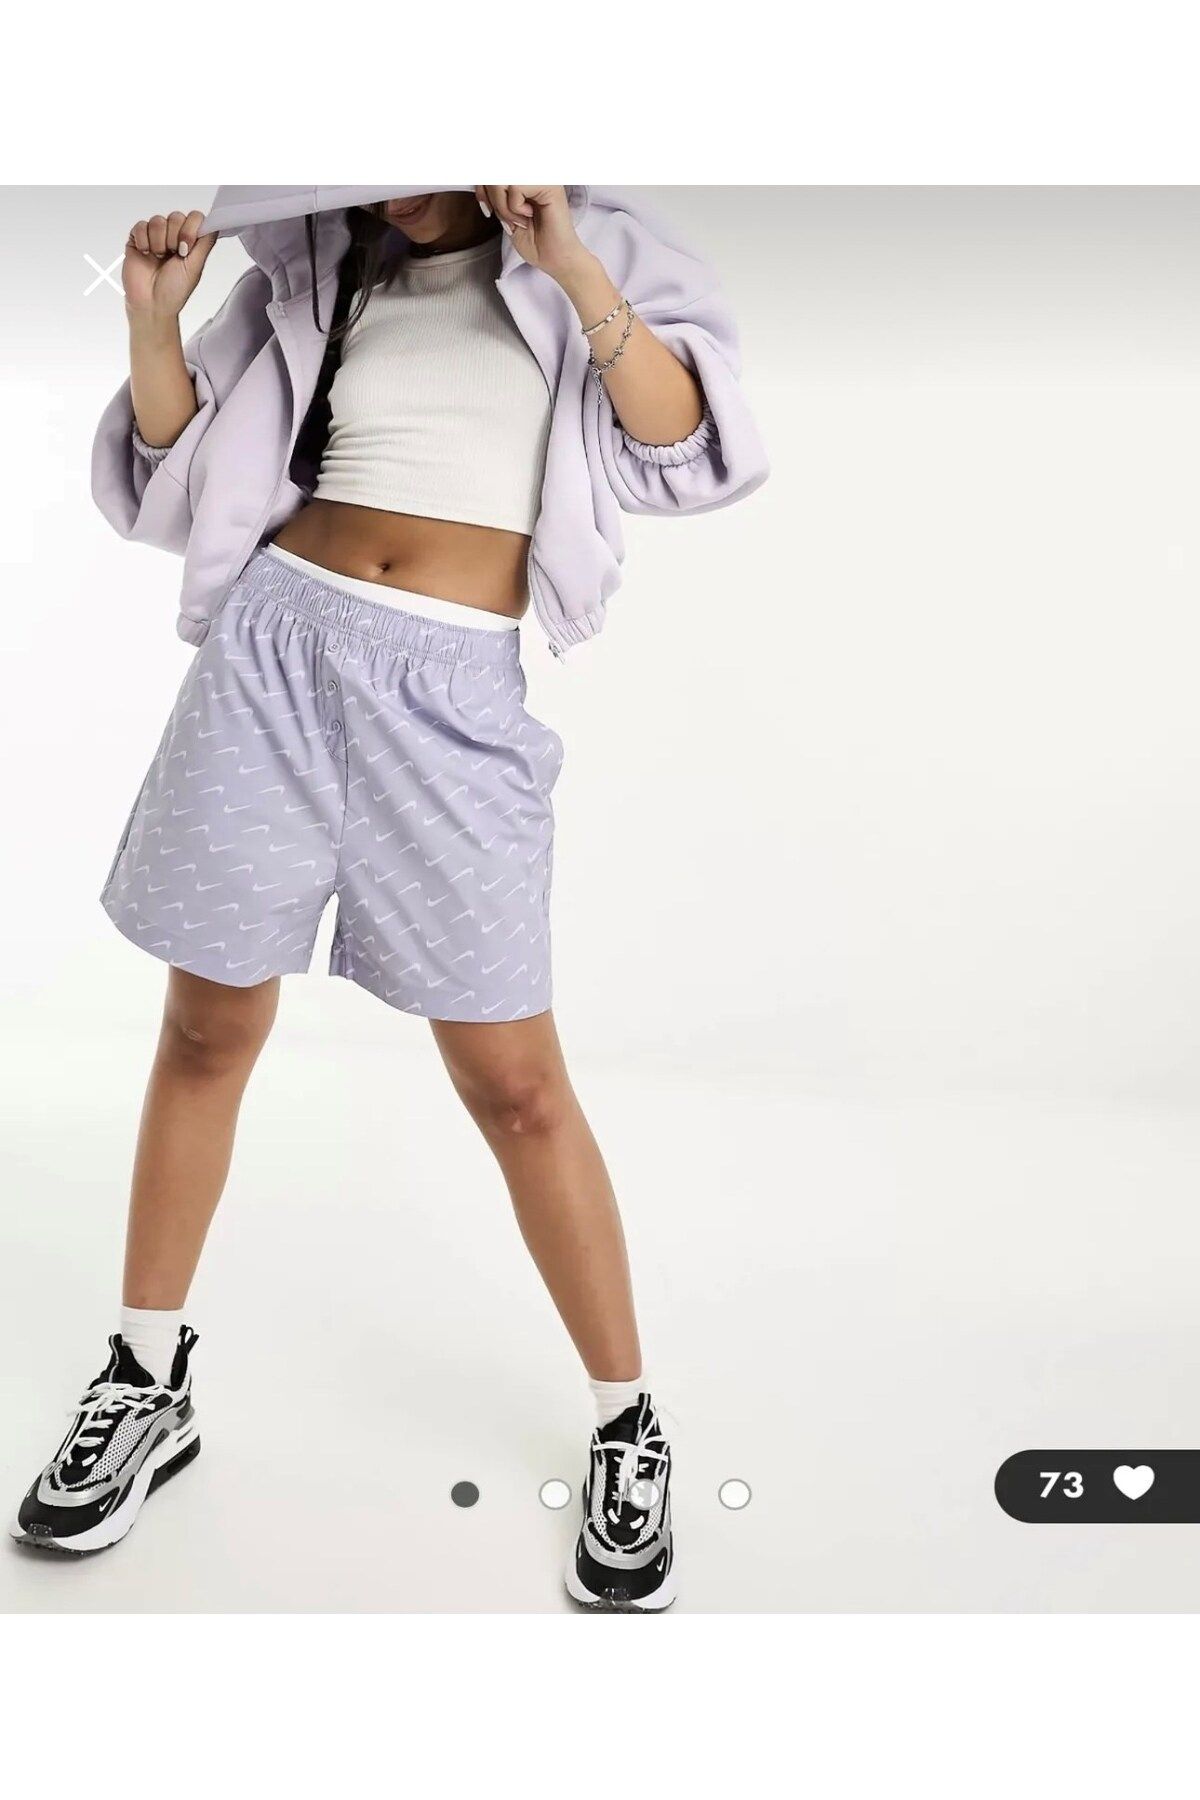 Nike Sportswear Gündelik Modern Yüksek Belli Dokuma Kadın Şort GÜLER BİBER